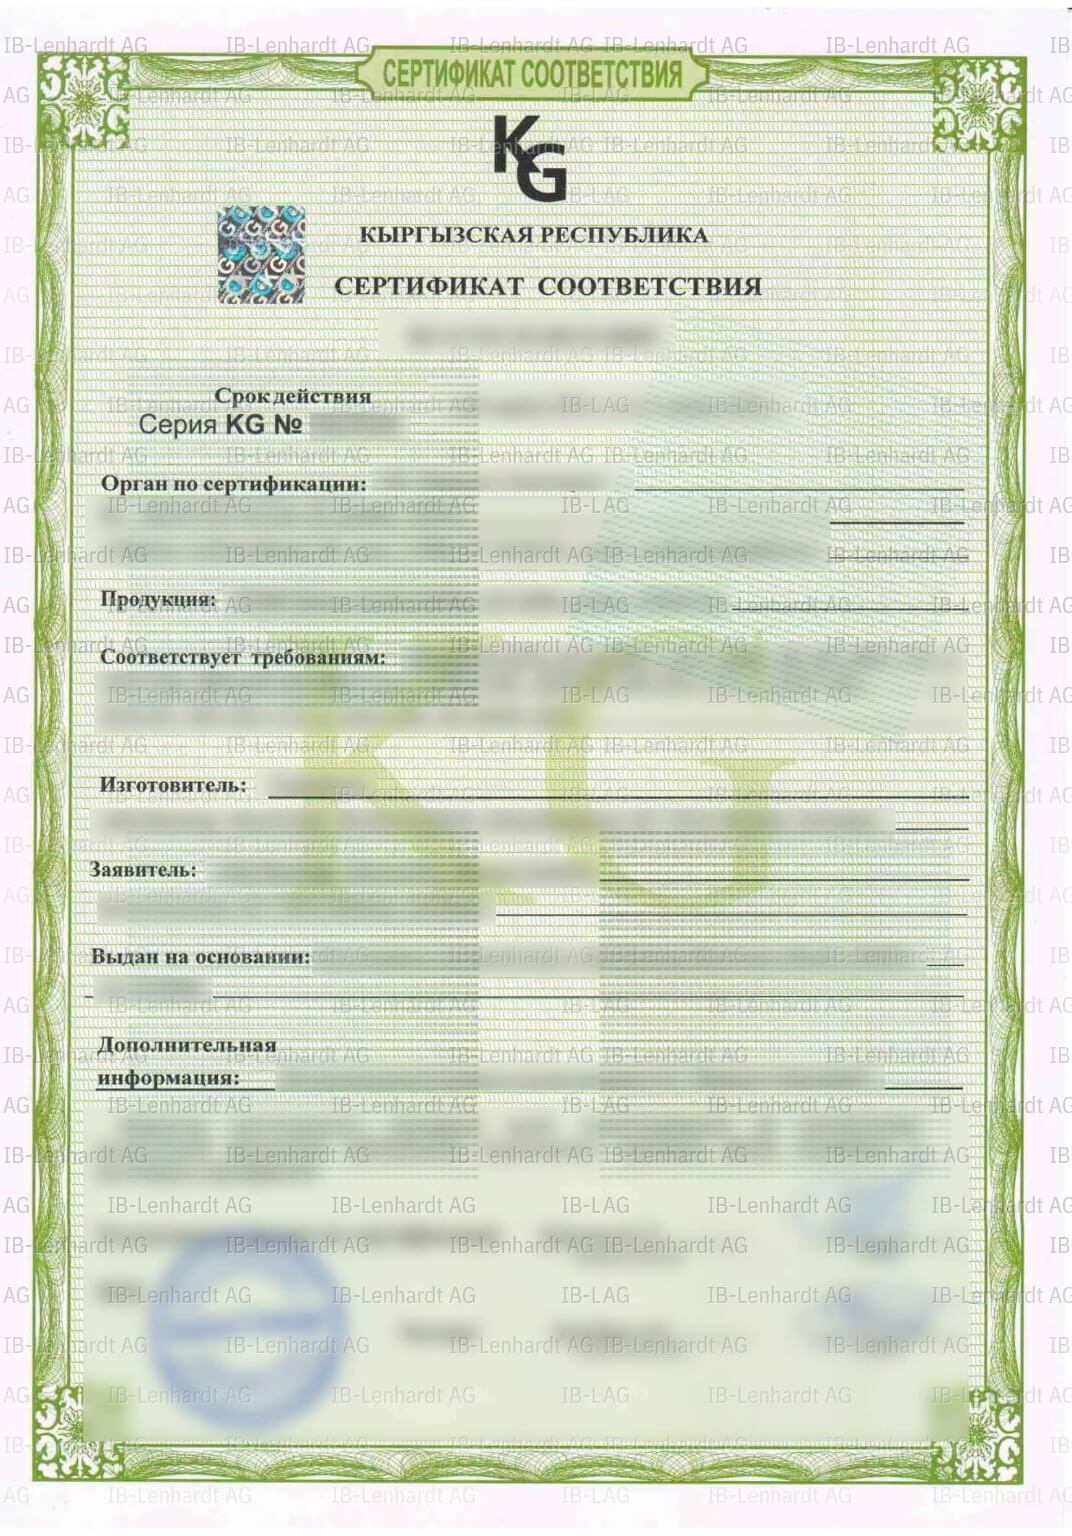 認証書の例 キルギス